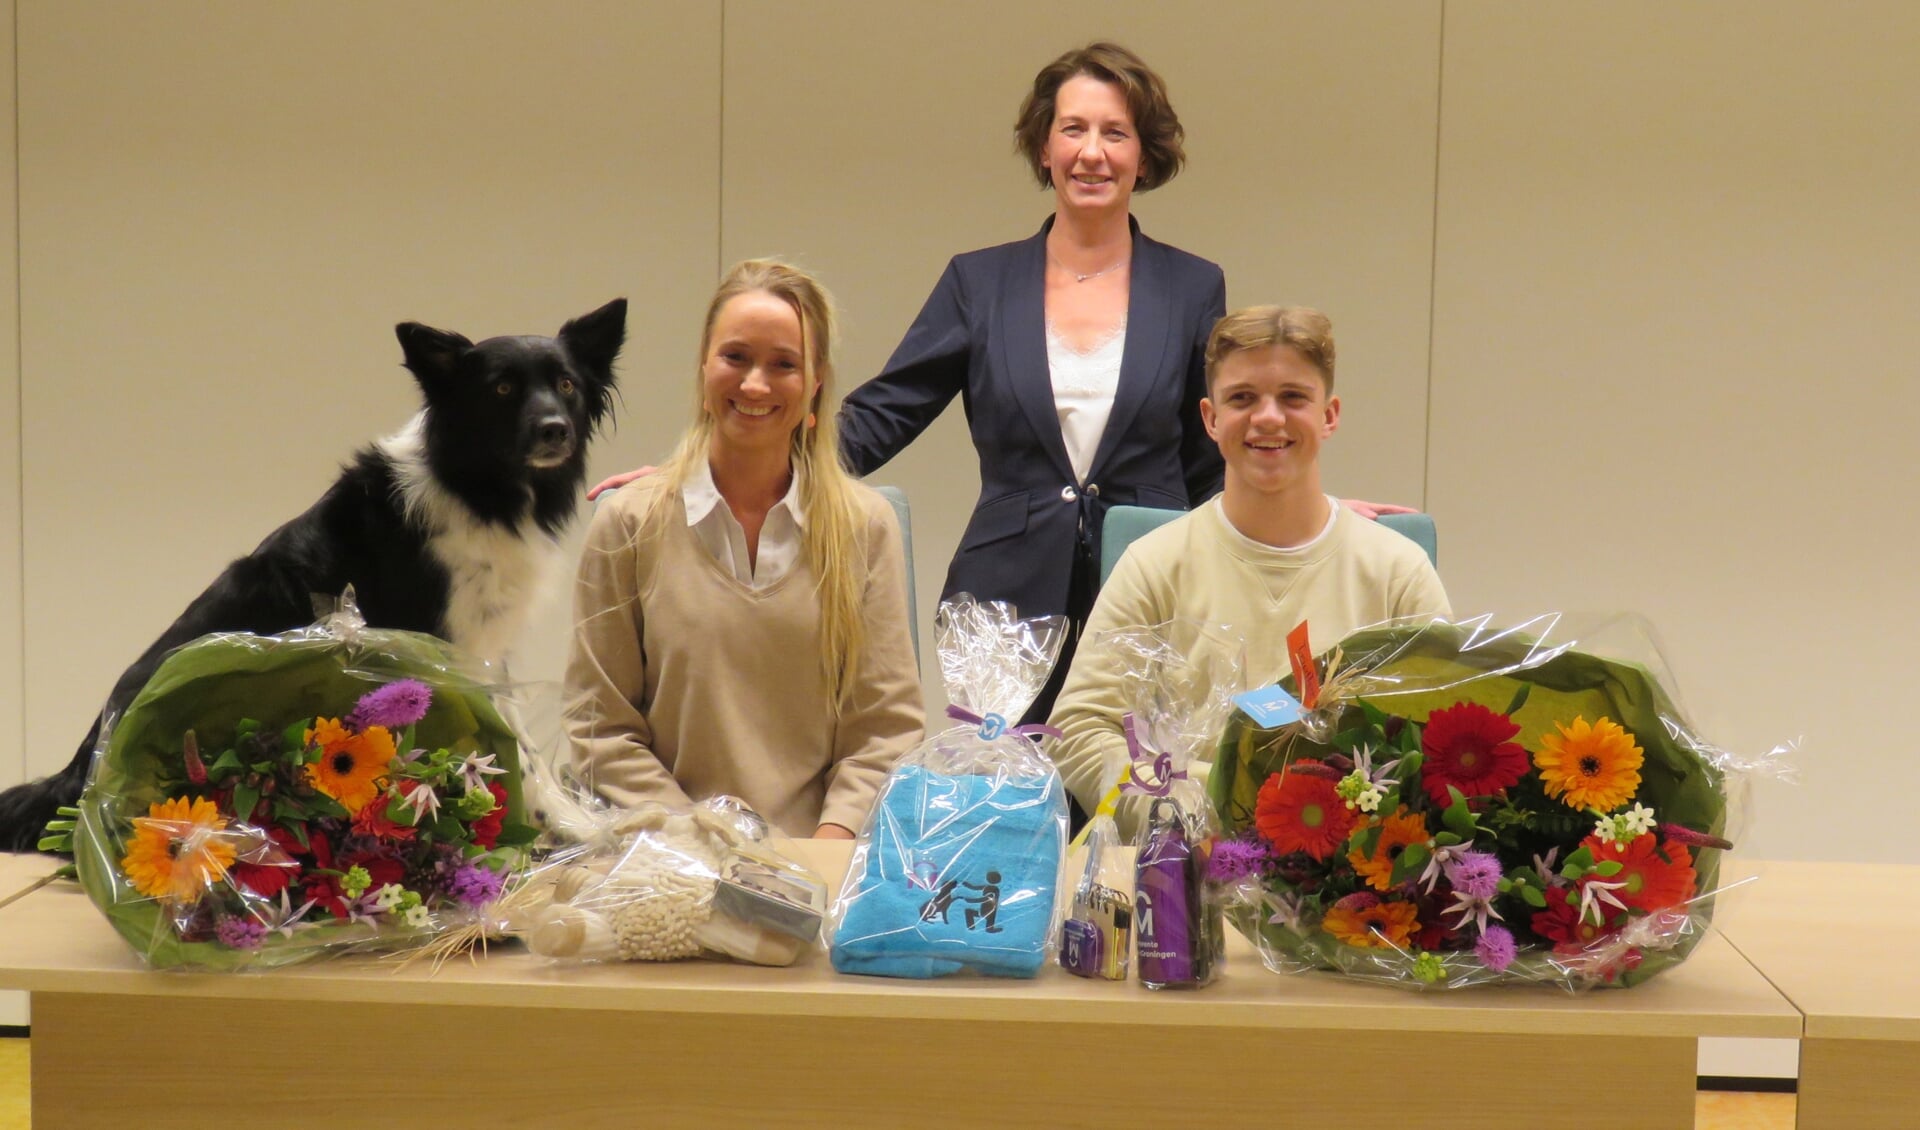 De kampioenen met bloemen en cadeaus, met in hun midden wethouder Annemiek Hoesen.